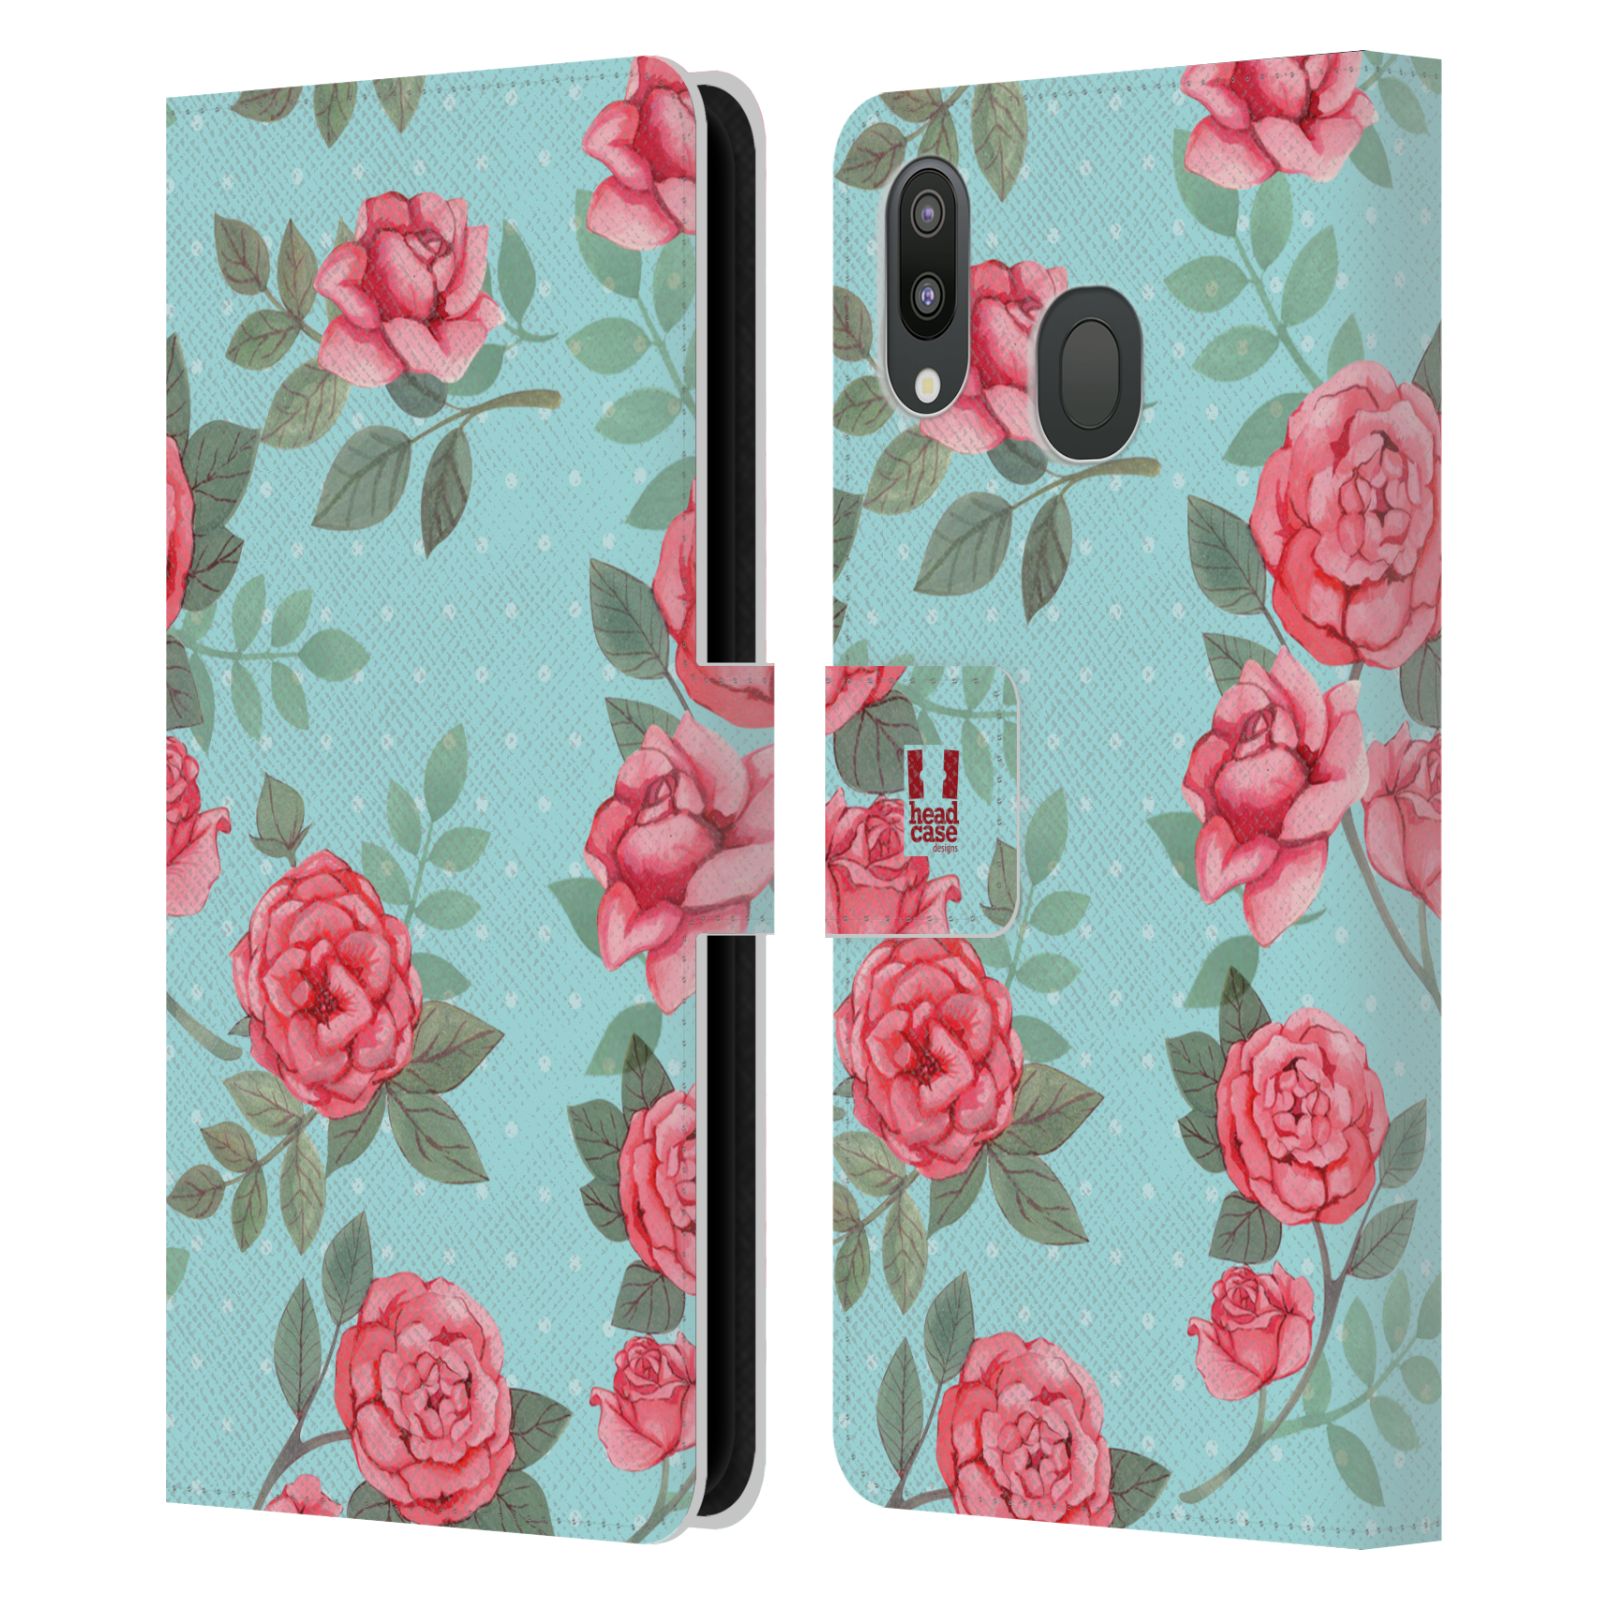 Pouzdro na mobil Samsung Galaxy M20 romantické květy velké růže modrá a růžová